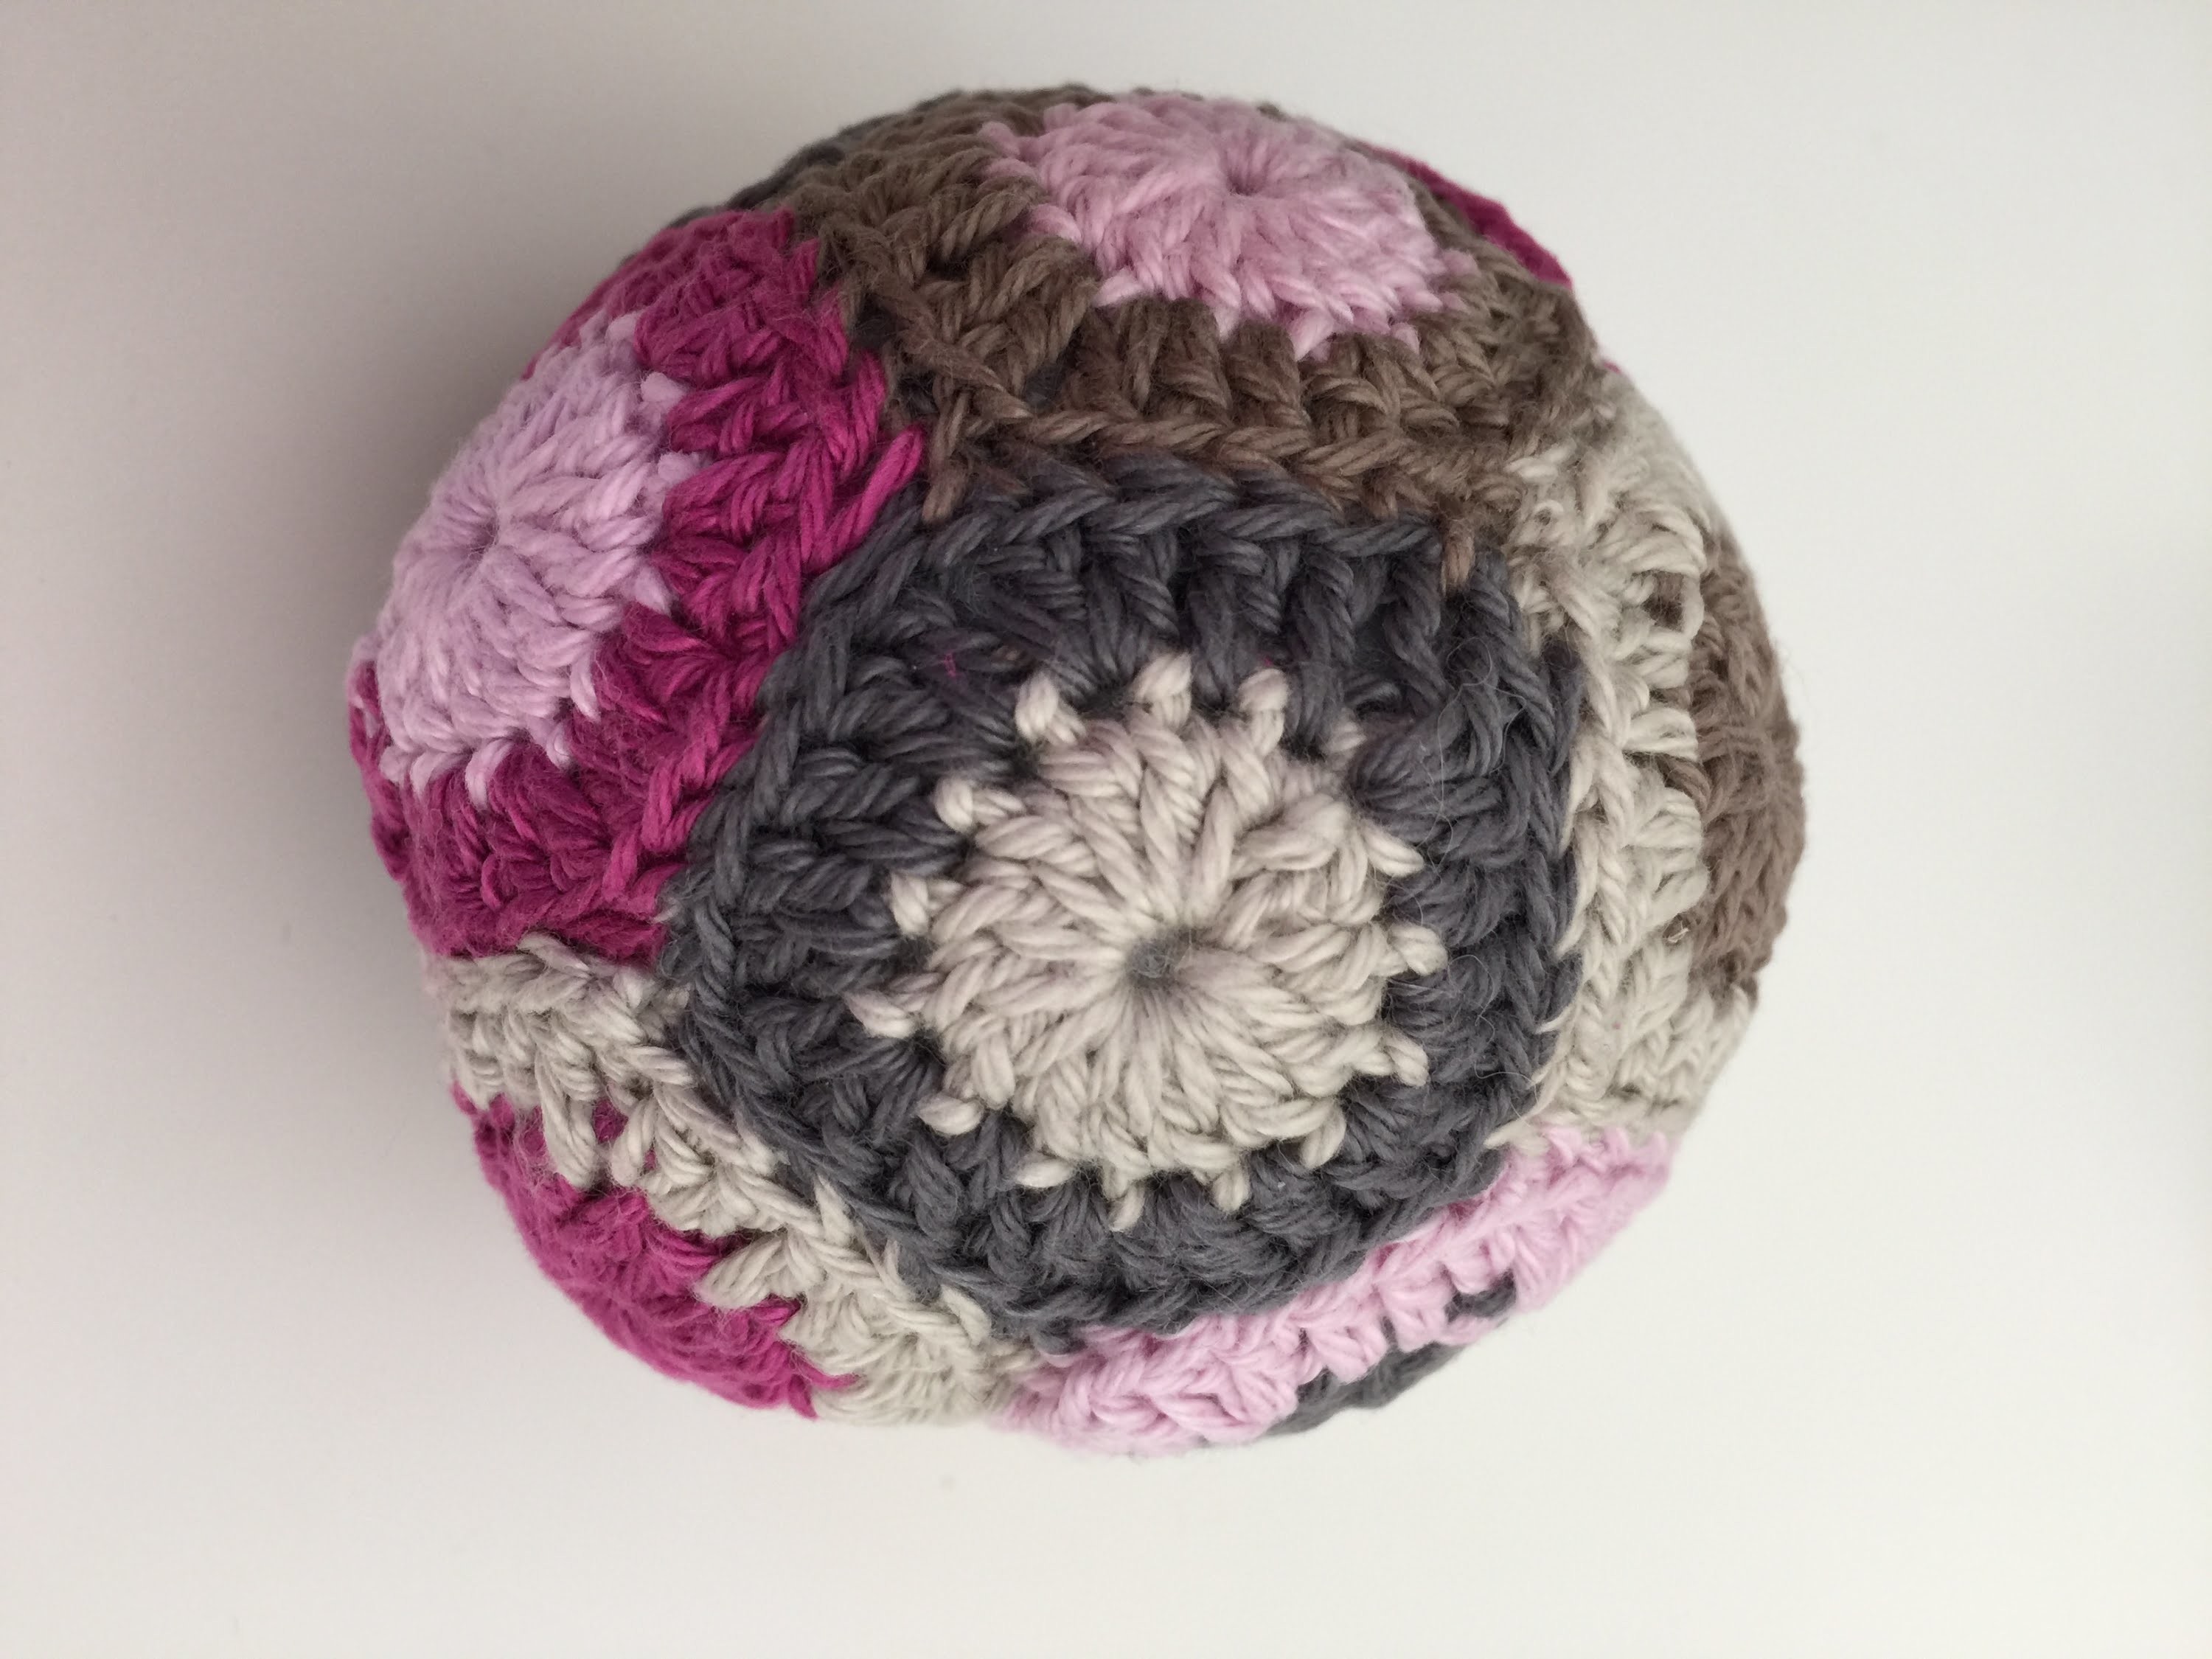 Häkeln. Crochet: Grannys zusammen nähen z.B. bei einem Grannyball